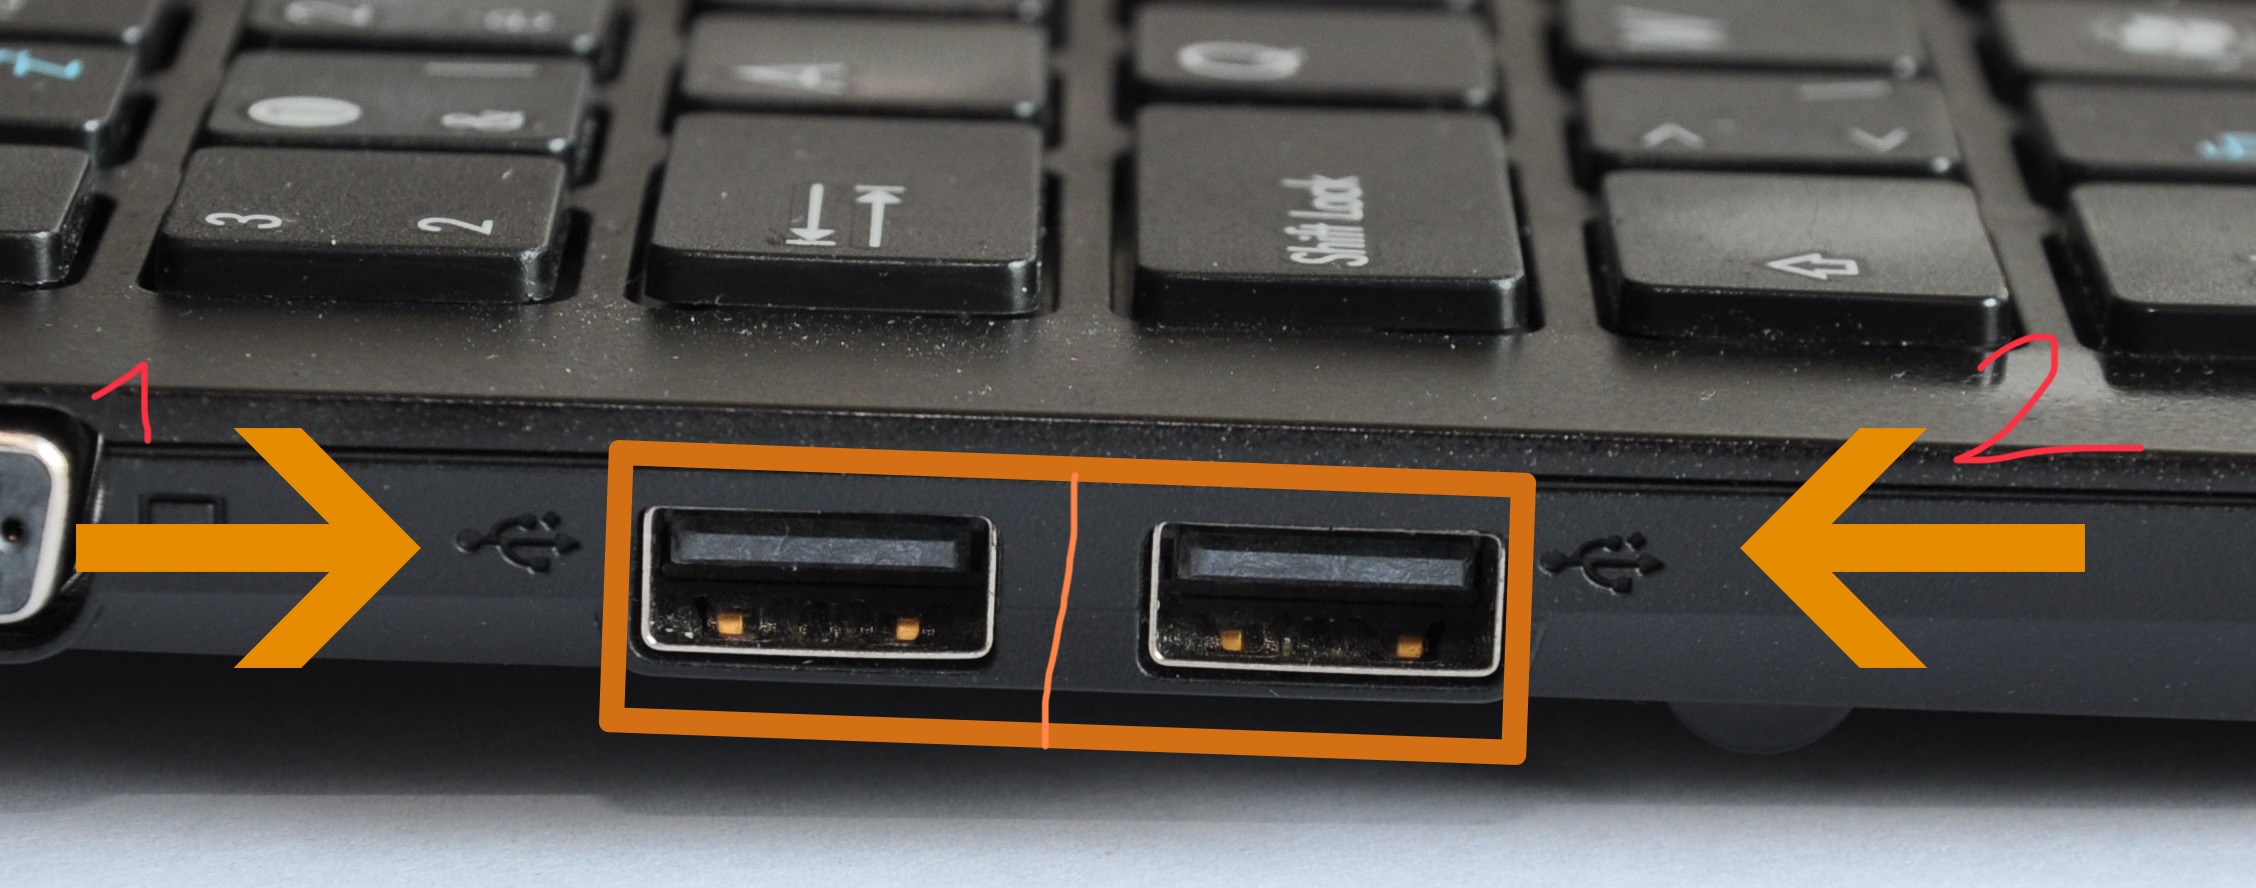 Usb порт память. USB Порты. USB порт в ПК. Порты ноутбука. USB порт внутри.